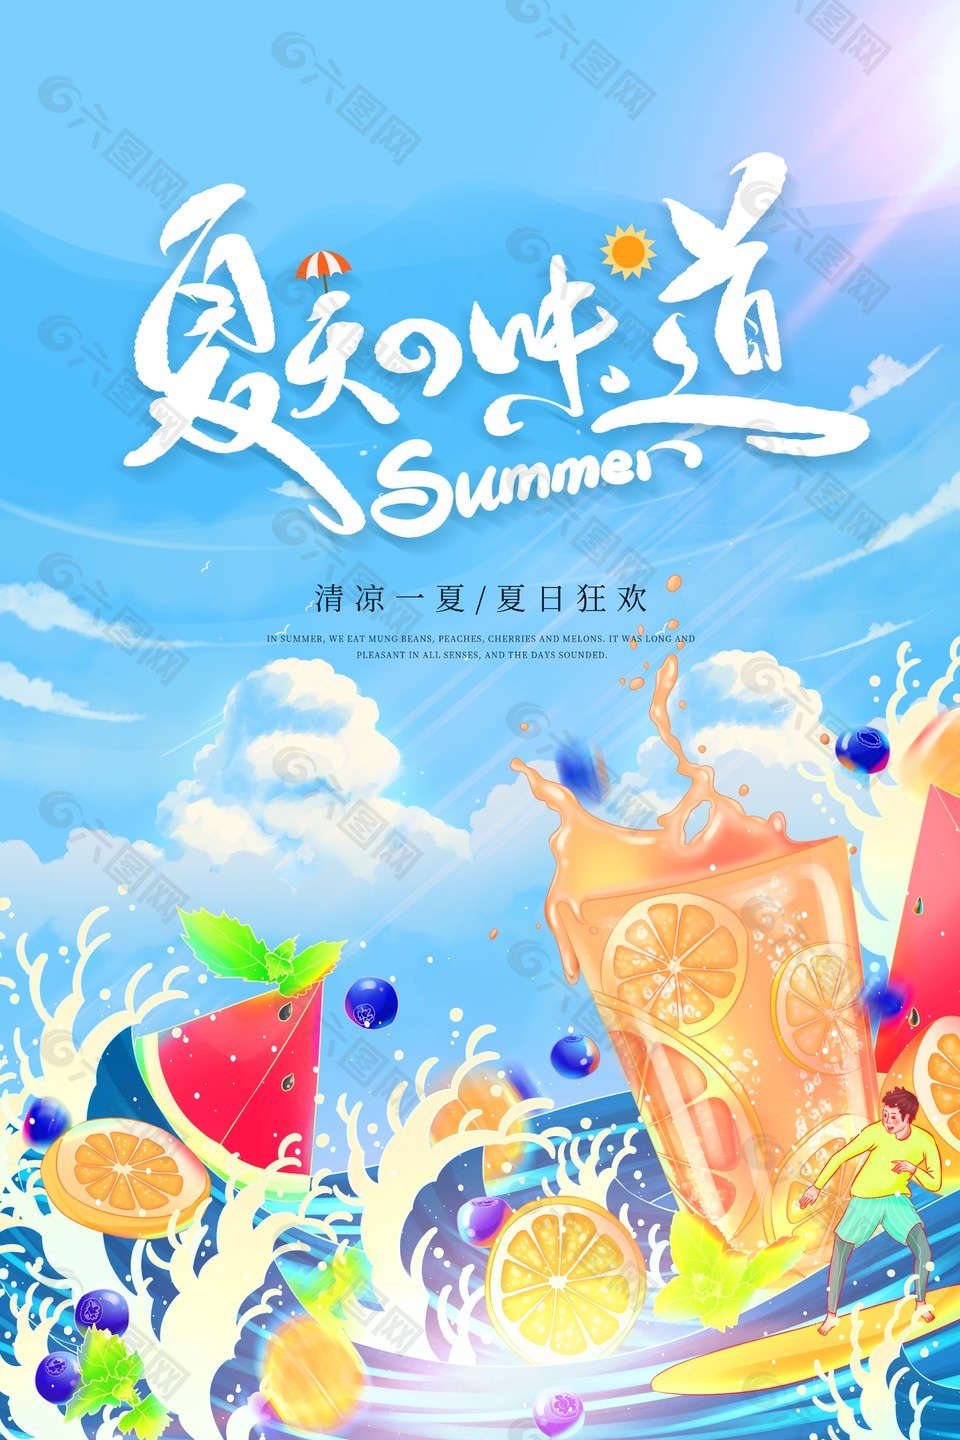 狂欢季清凉一夏蓝色创意海报